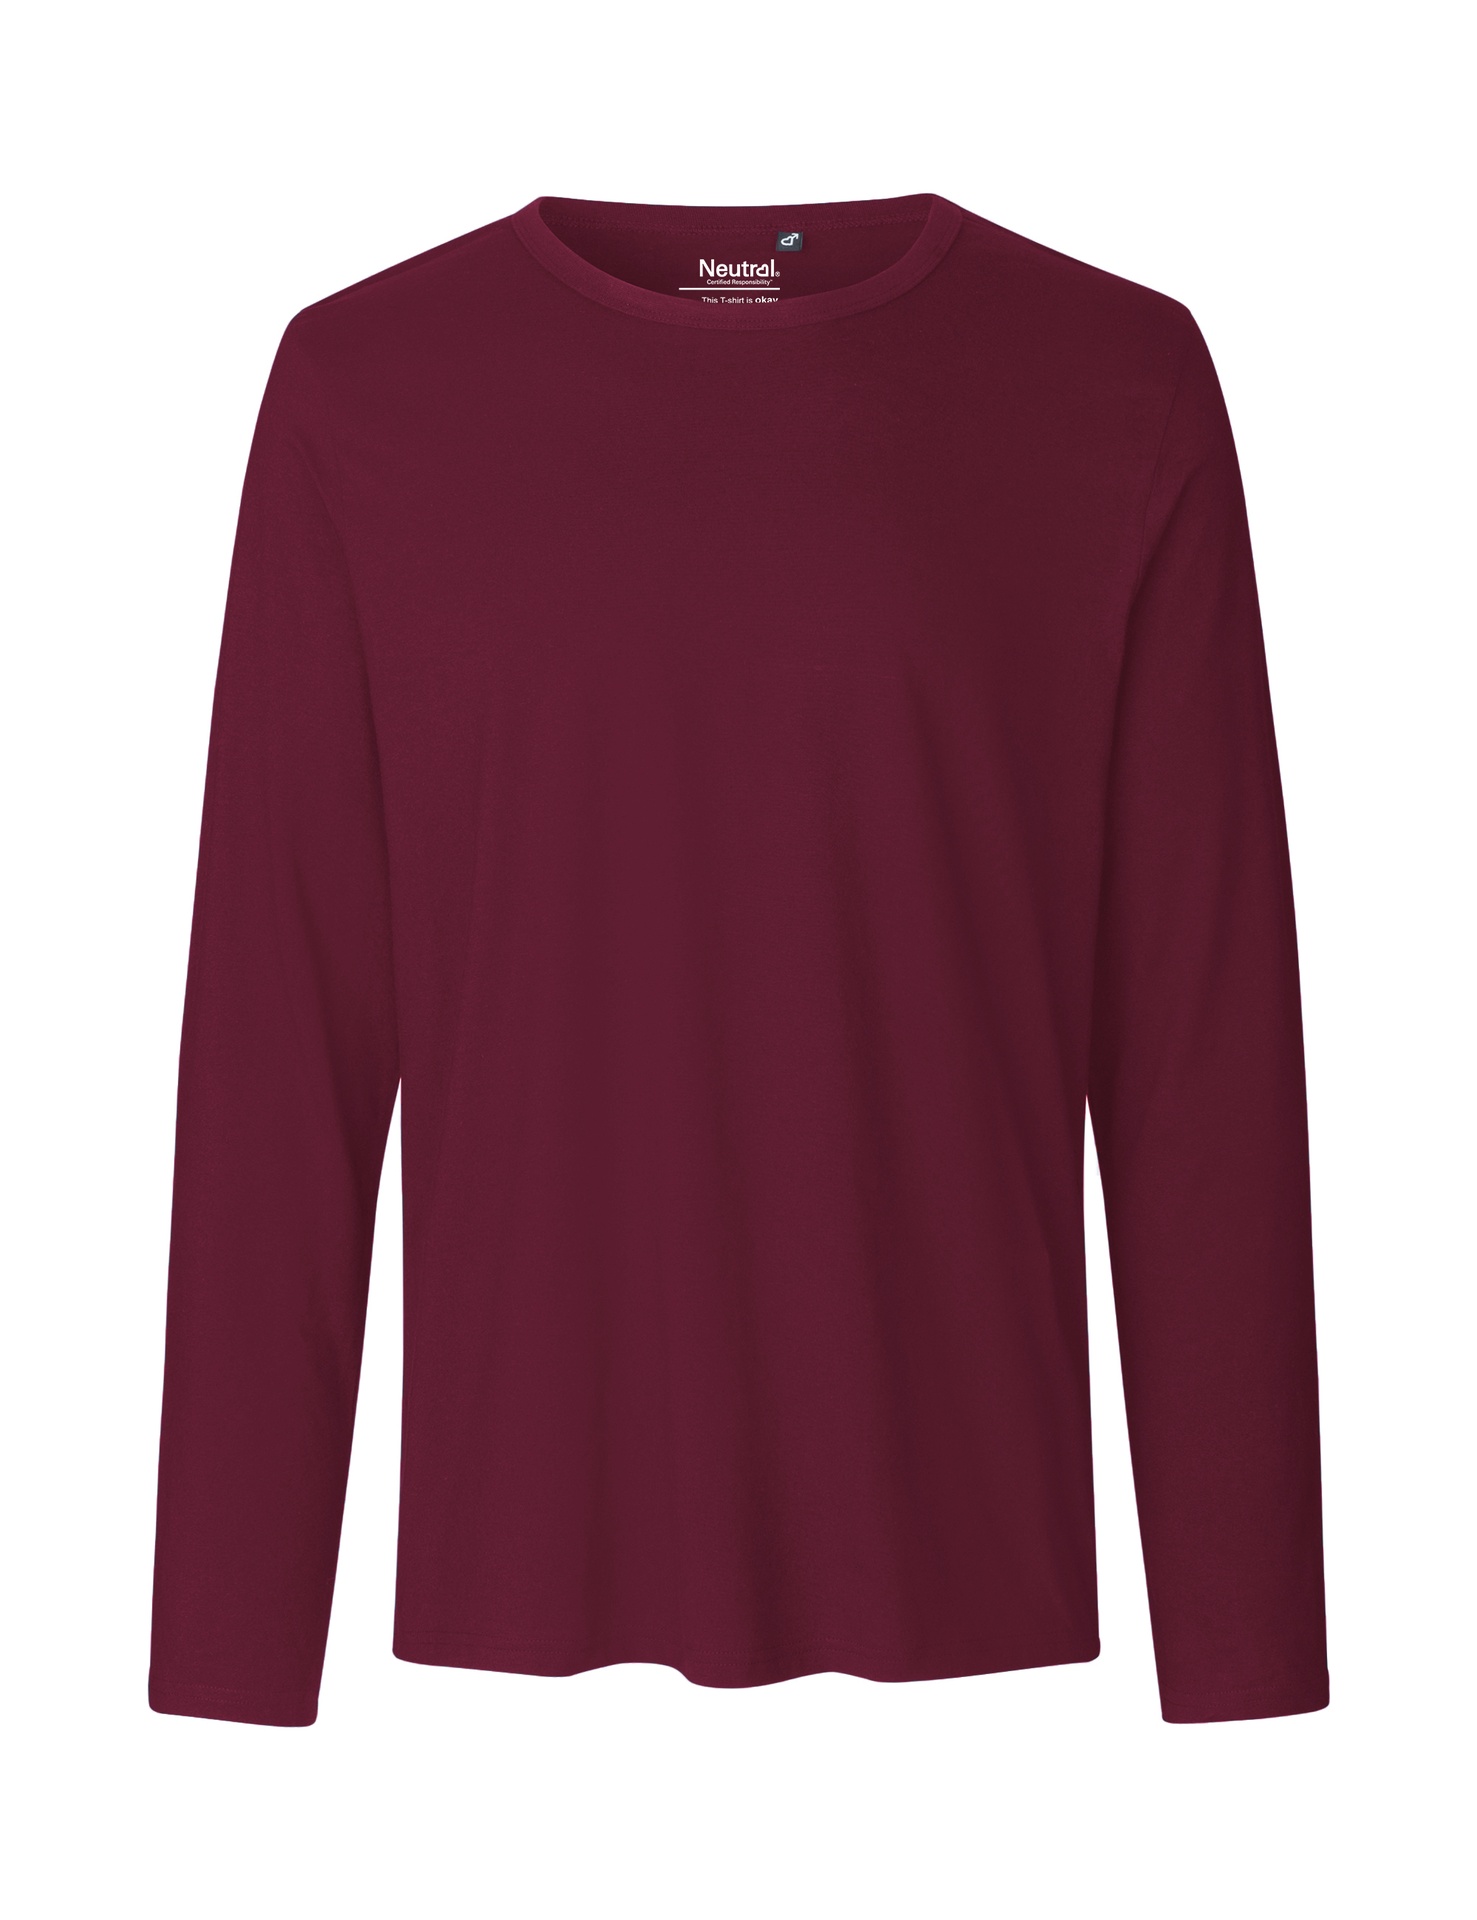 [PR/02404] Mens Long Sleeve T-Shirt (Bordeaux 26, S)